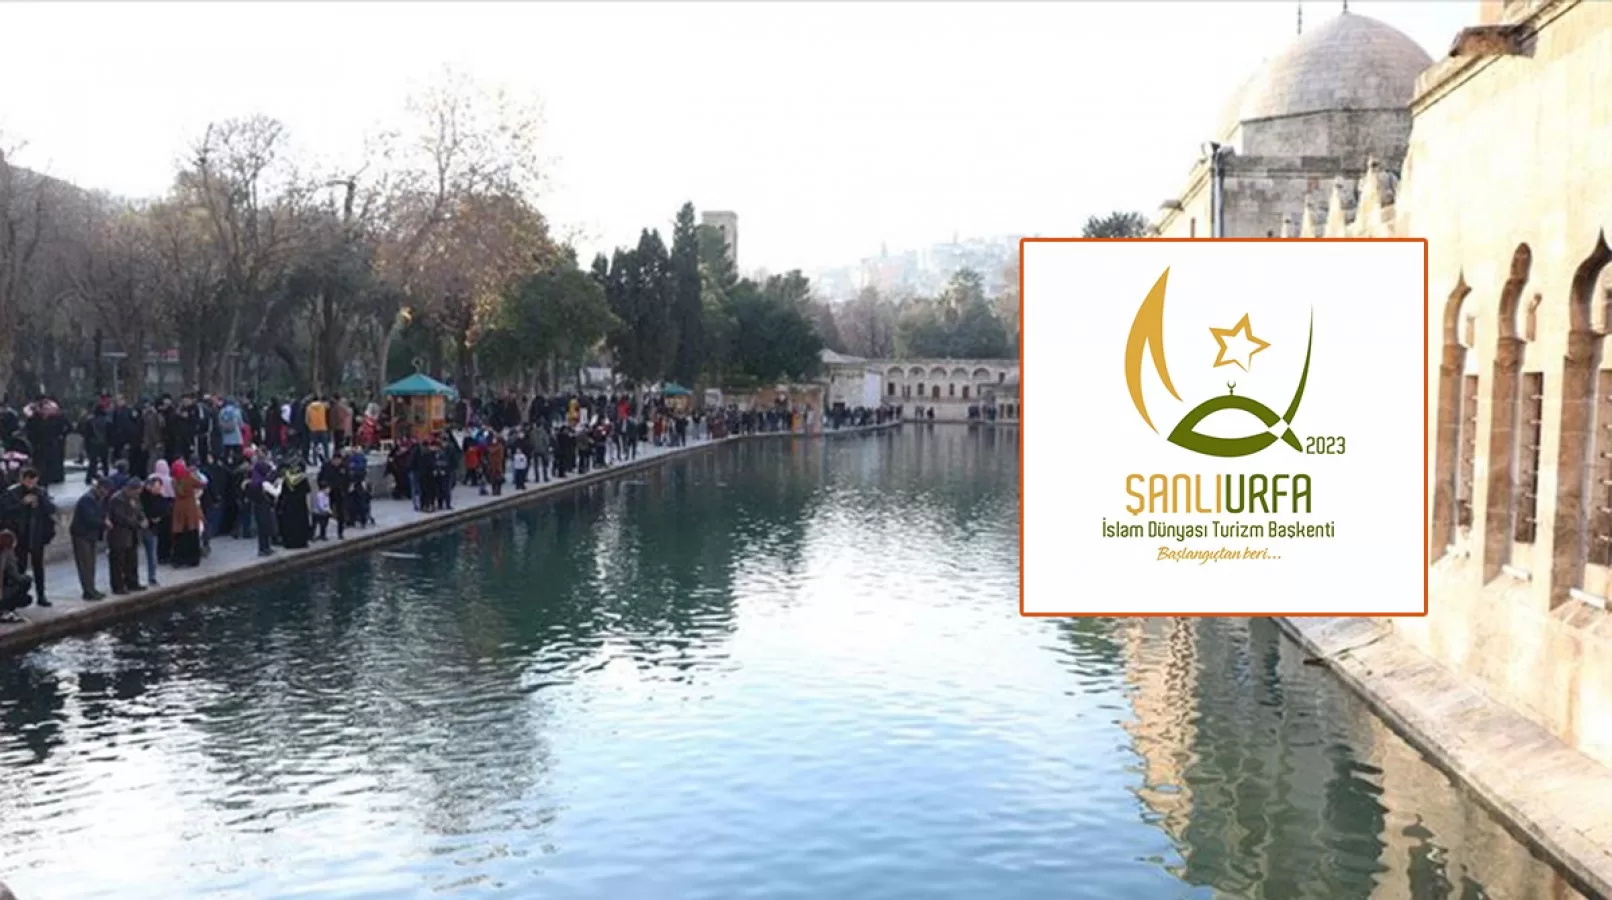 İşte Urfa'nın 2023 Turizm Başkenti etkinliklerinde kullanacağı logo ve slogan